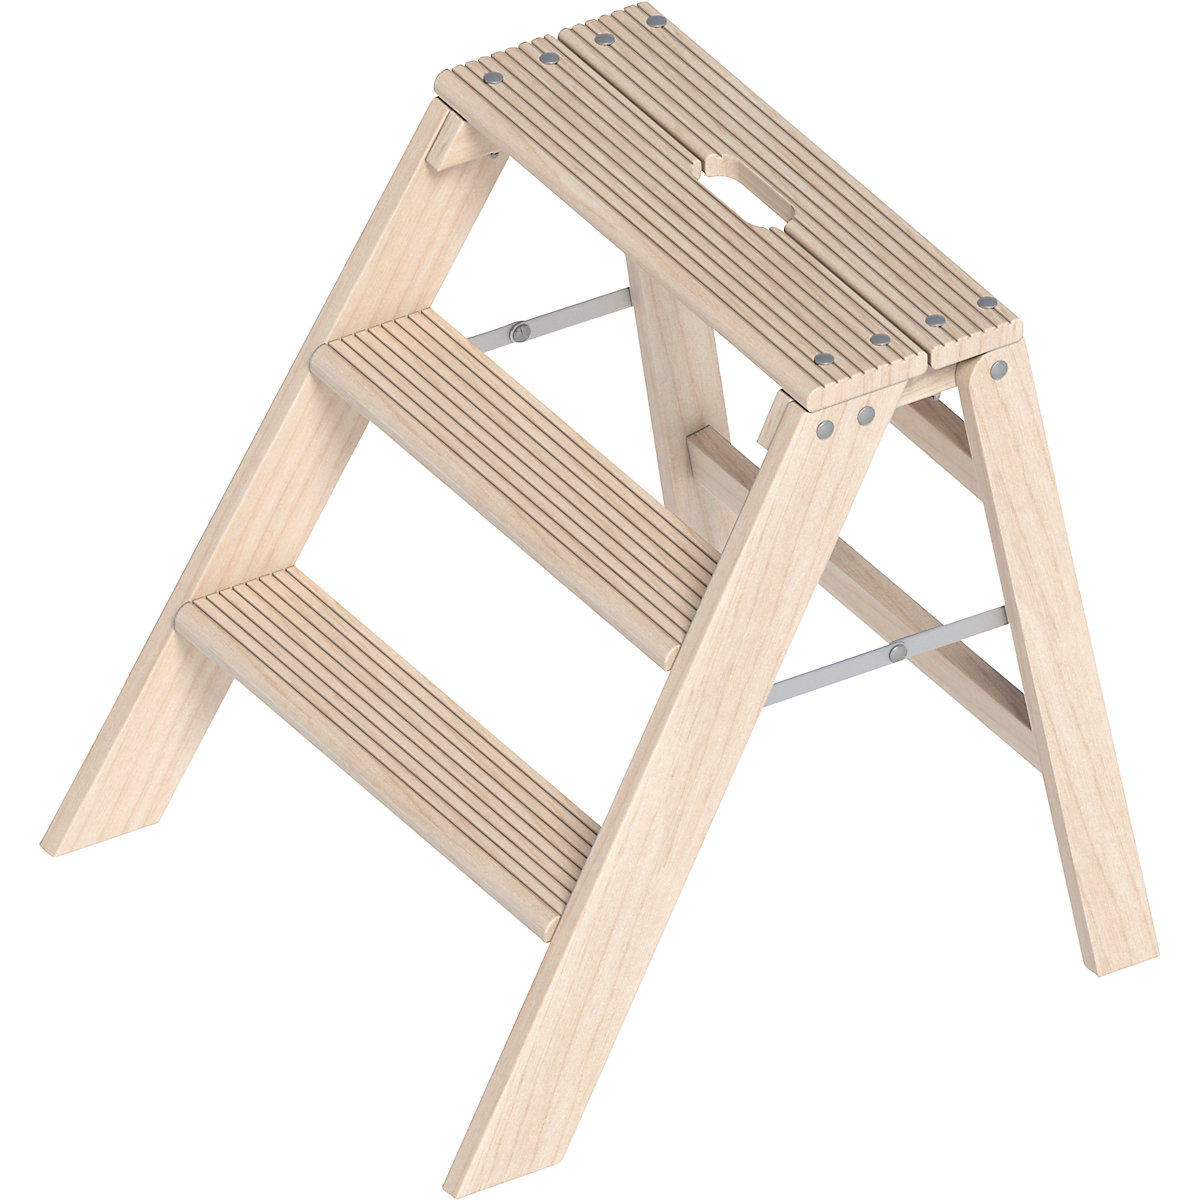 Wooden step ladder – Layher